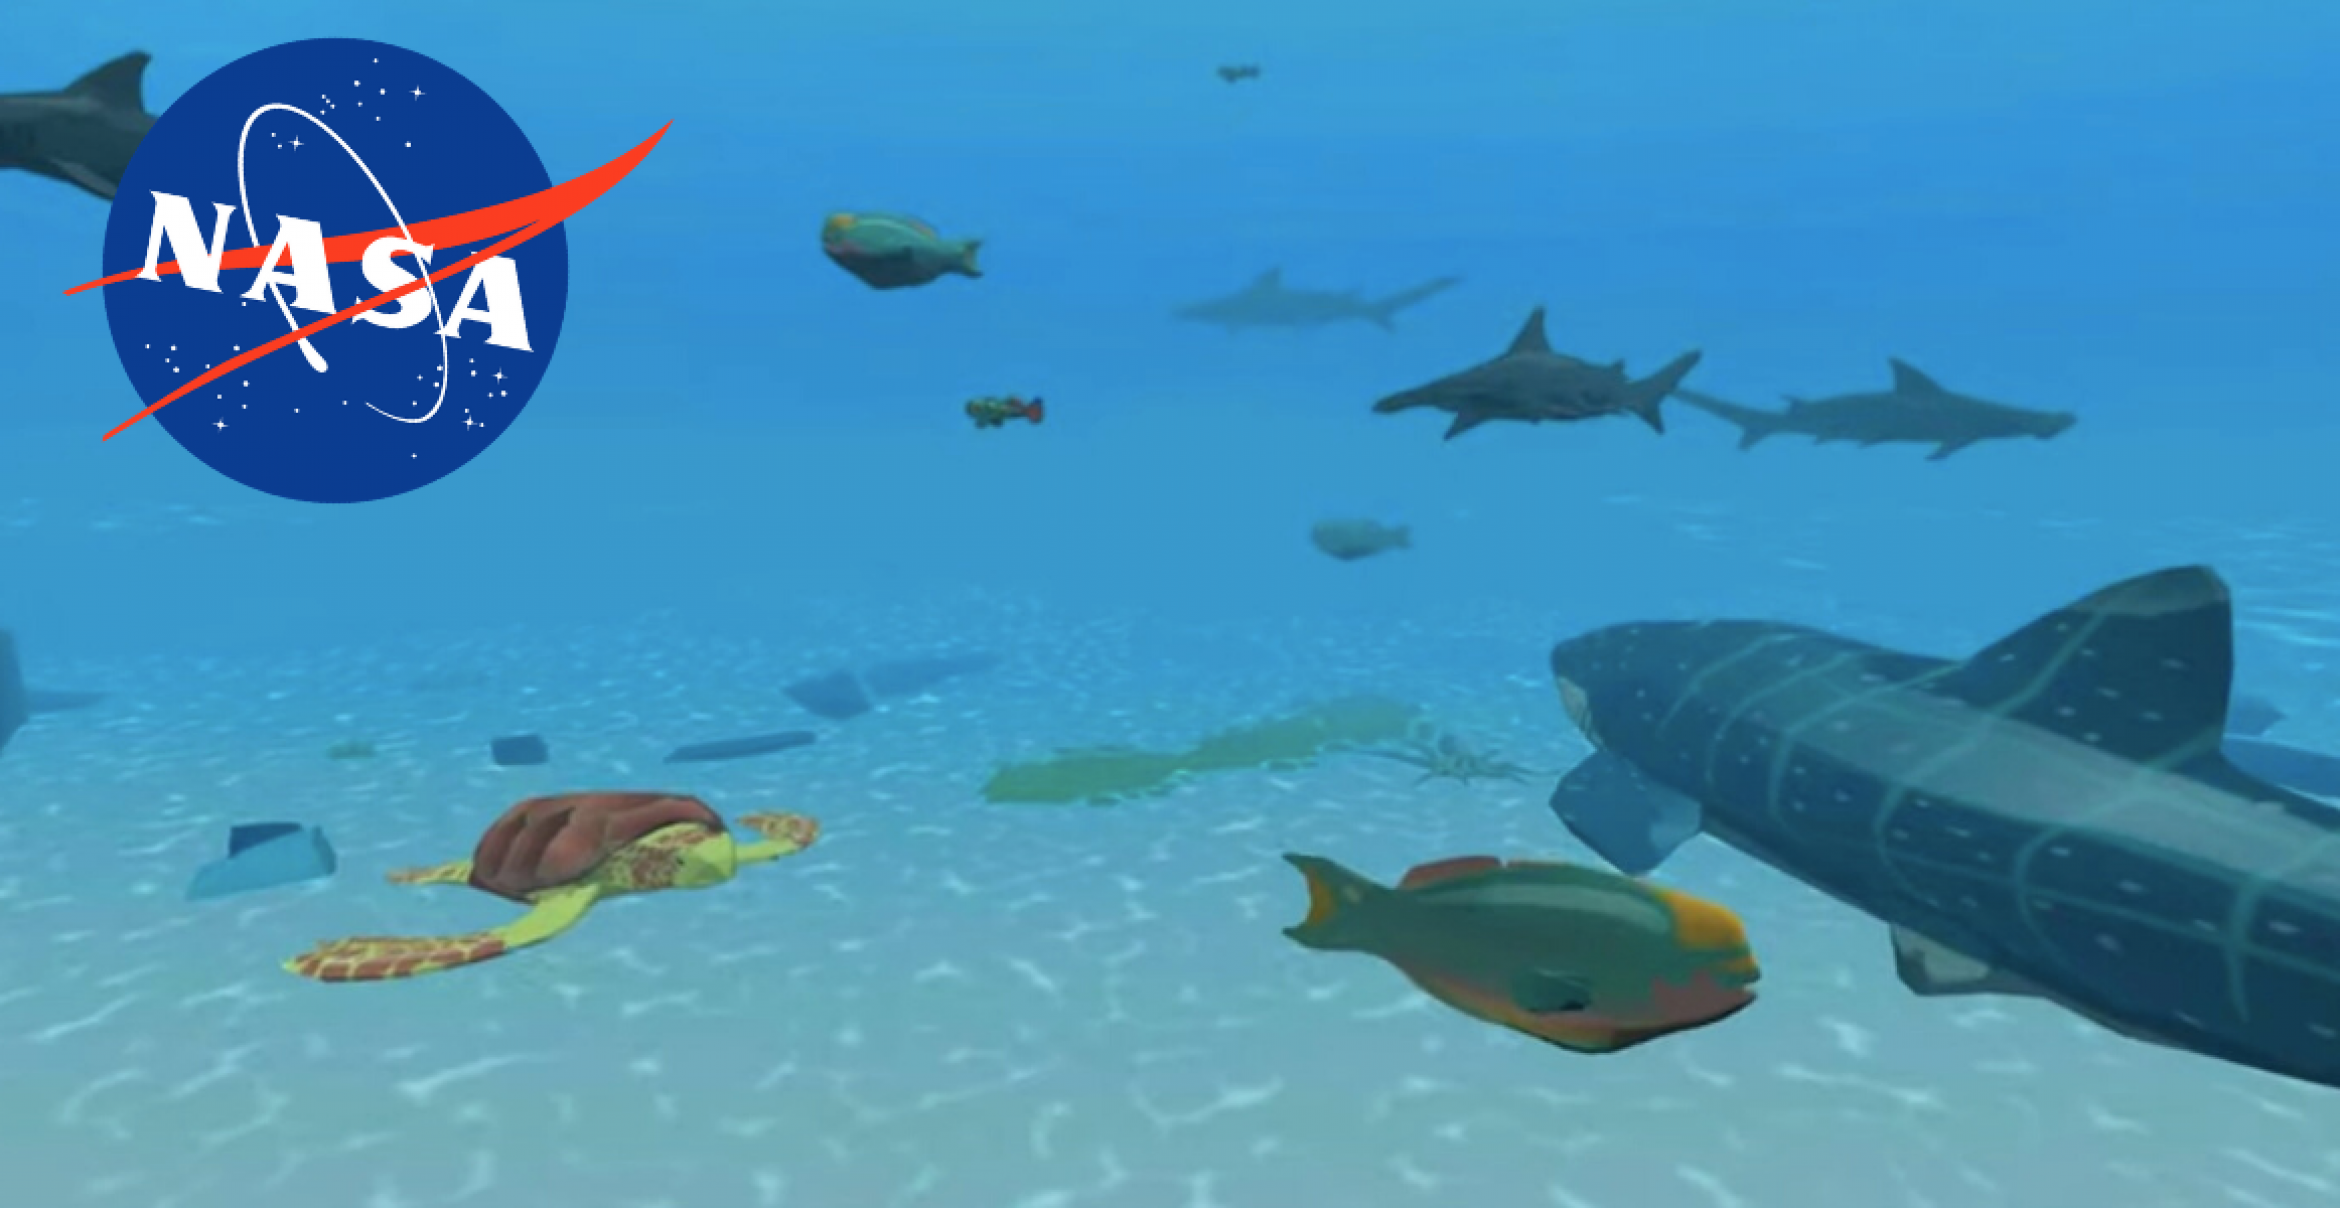 Mit diesem Videospiel kannst du der NASA dabei helfen, die Meeresböden zu erforschen